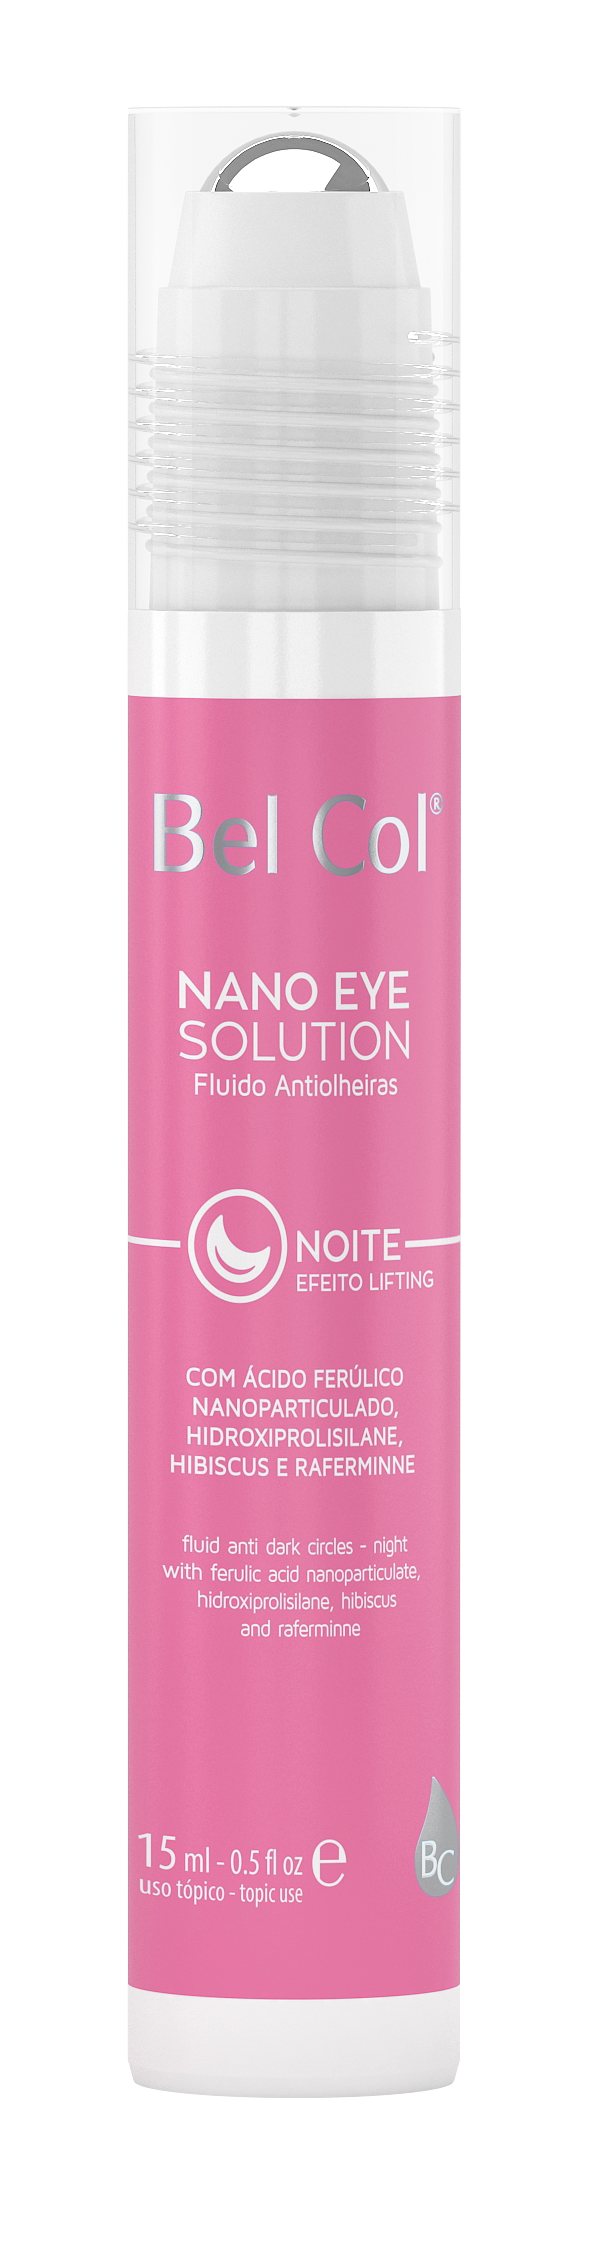 Nano Eye Solution - Kit Antiolheiras (Dia e Noite) - 15 g cada